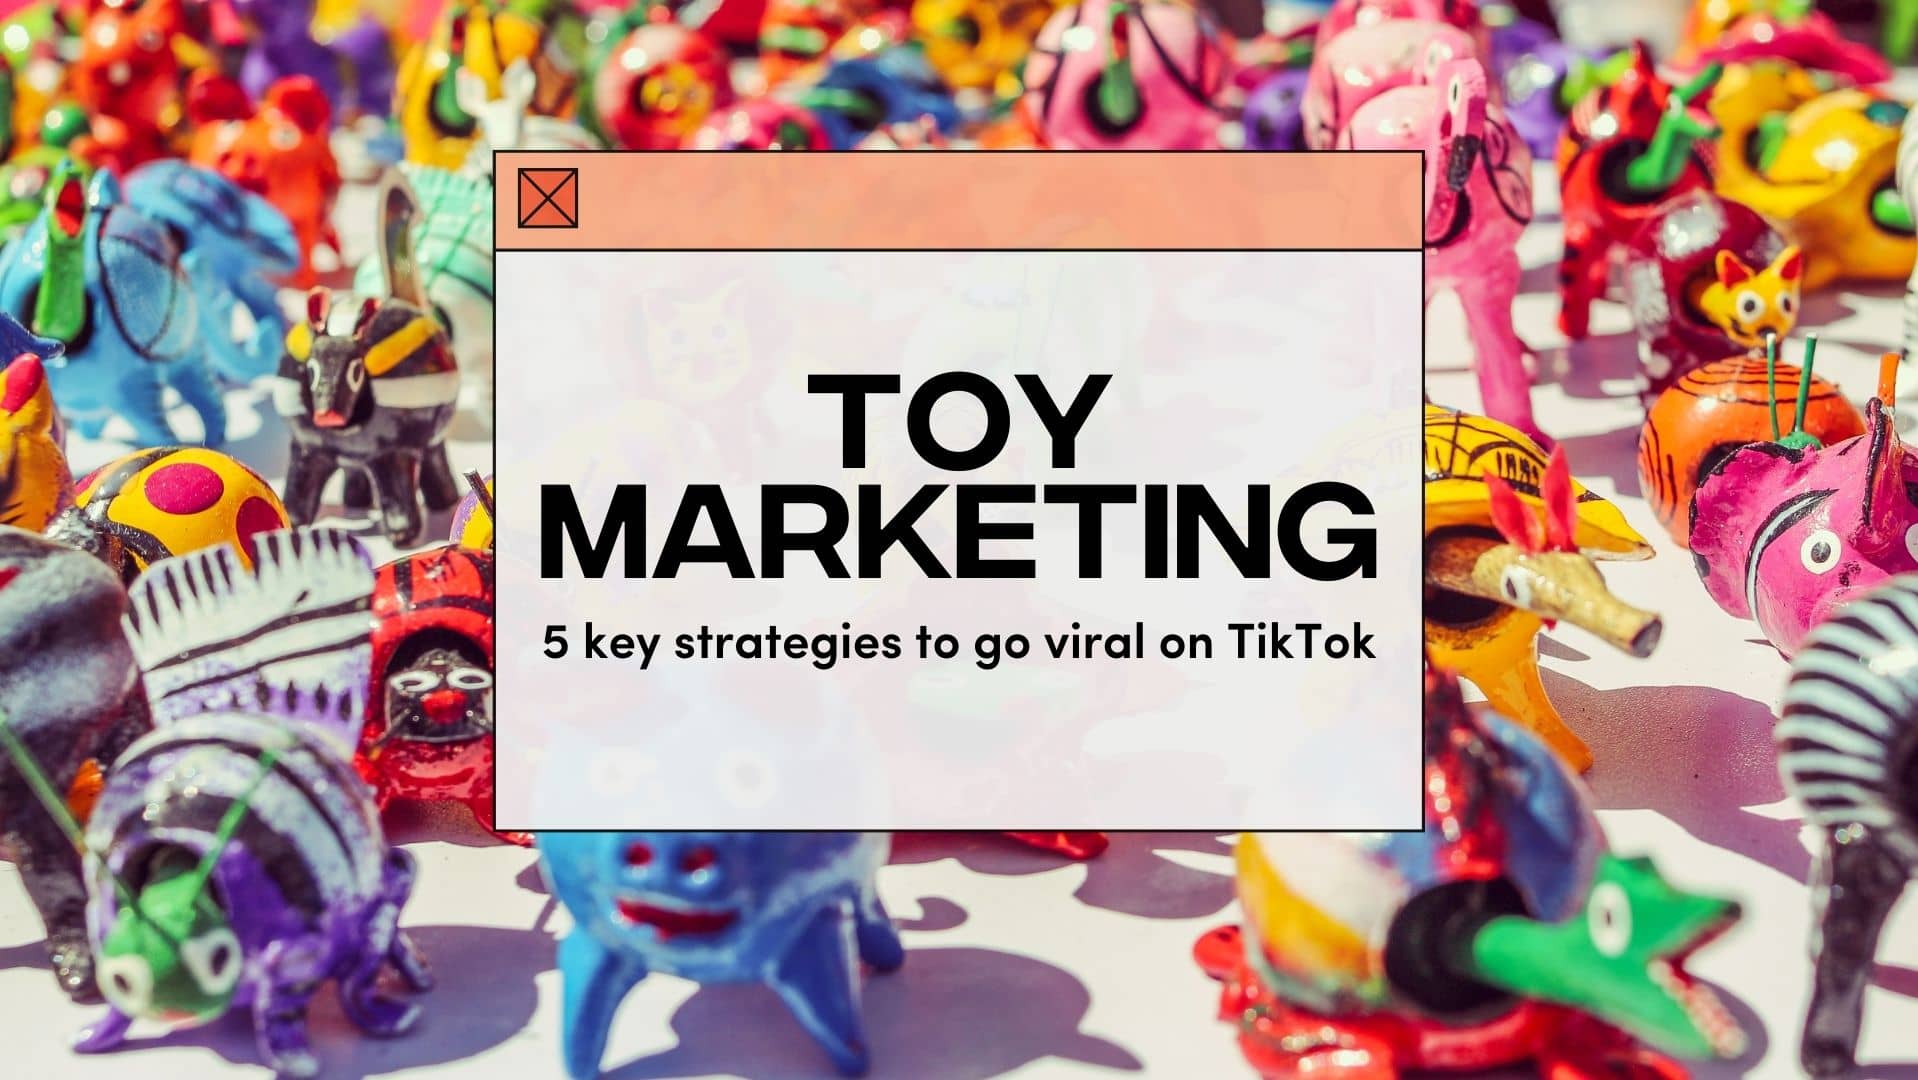 Toy Marketing 5 Key Strategies to Go Viral on TikTok